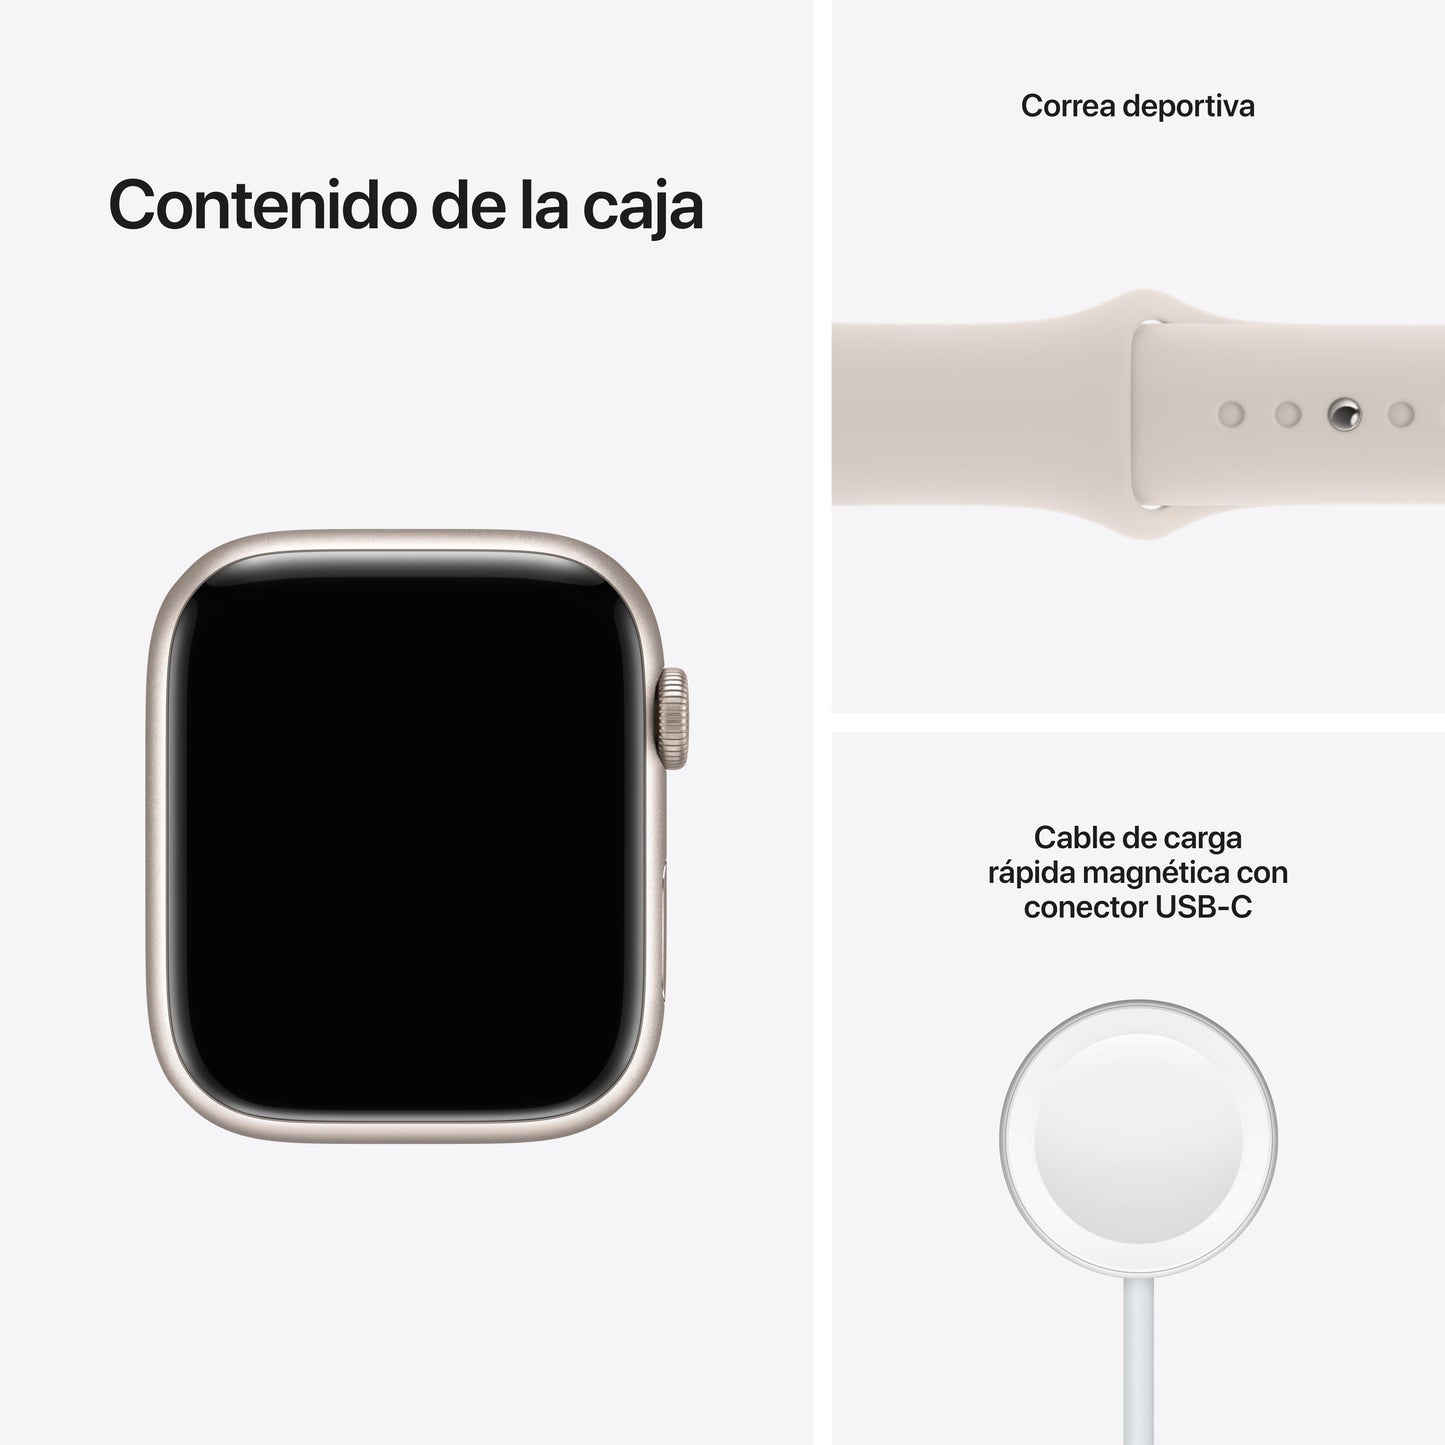 Apple Watch Series 7 (GPS + Cellular) - Caja de aluminio en blanco estrella de 45 mm - Correa deportiva blanco estrella - Talla única